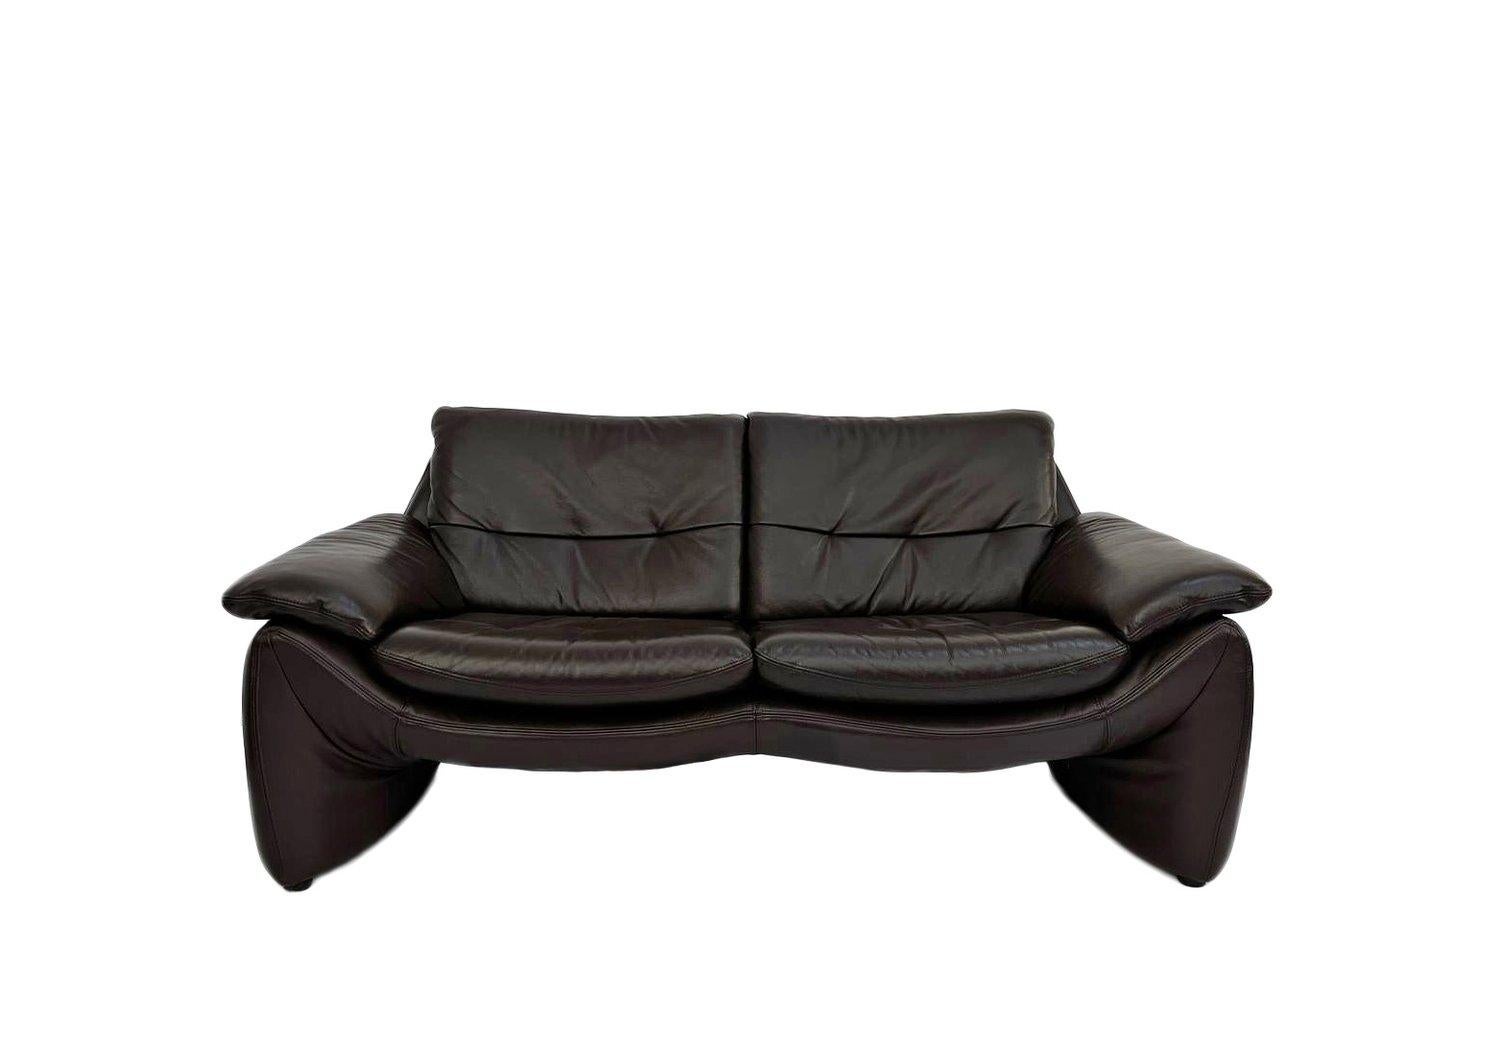 Ein schönes dänisches dunkelbraunes Ledersofa mit 2 Sitzplätzen, das eine stilvolle Ergänzung für jeden Wohn- oder Arbeitsbereich darstellt.

Das Sofa hat breite Sitze und gepolsterte Armlehnen für mehr Komfort. Ein markantes Stück klassischer